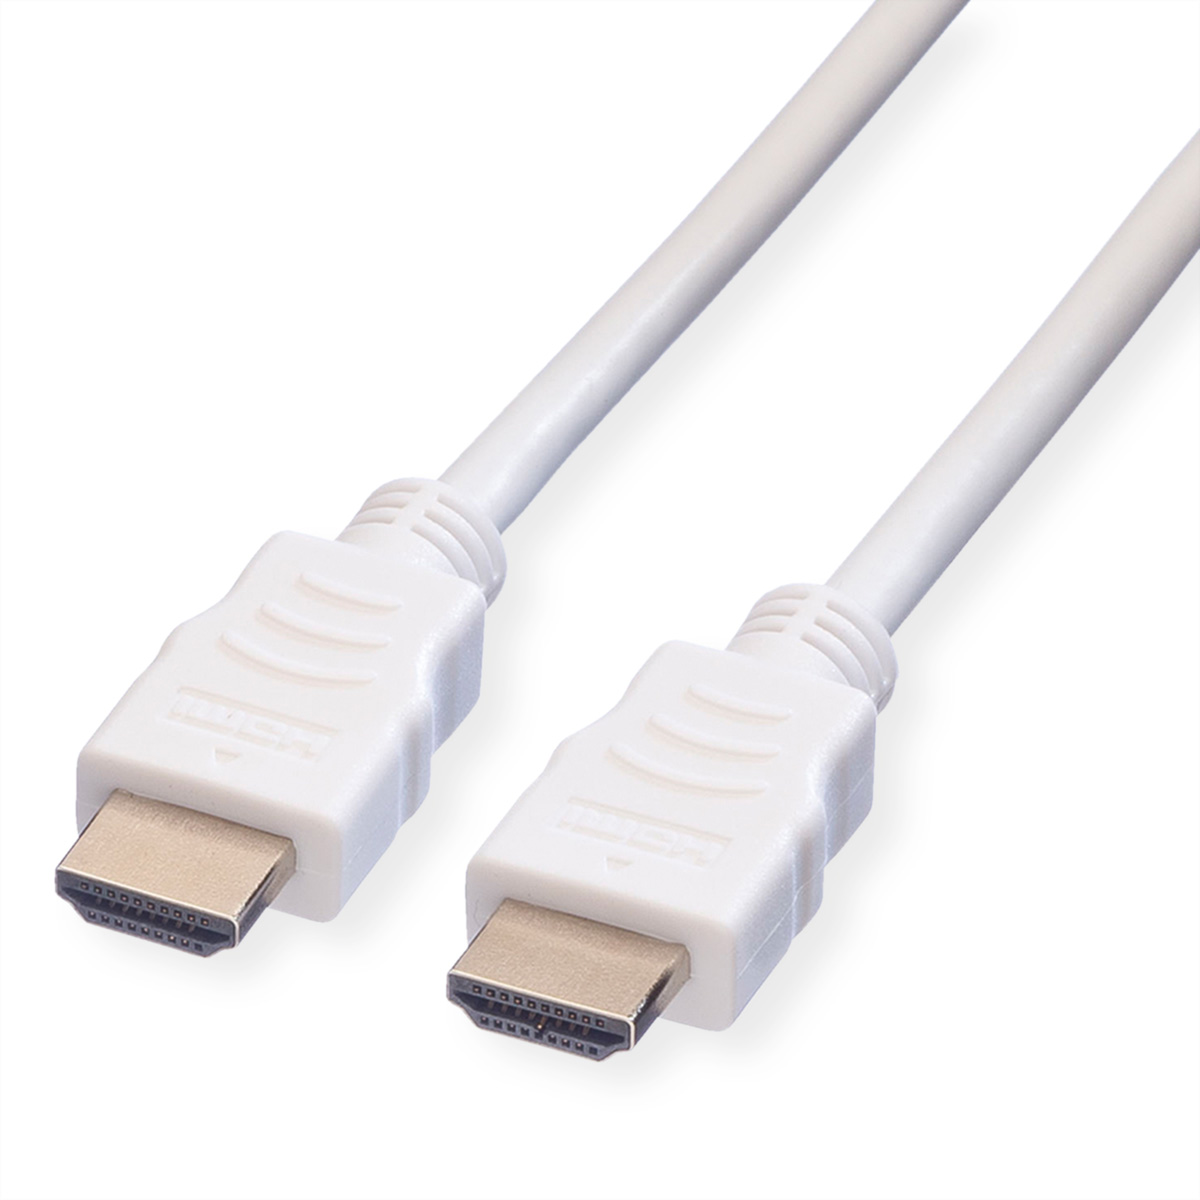 VALUE HDMI High Speed Kabel mit Ethernet, weiß, 1,5 m